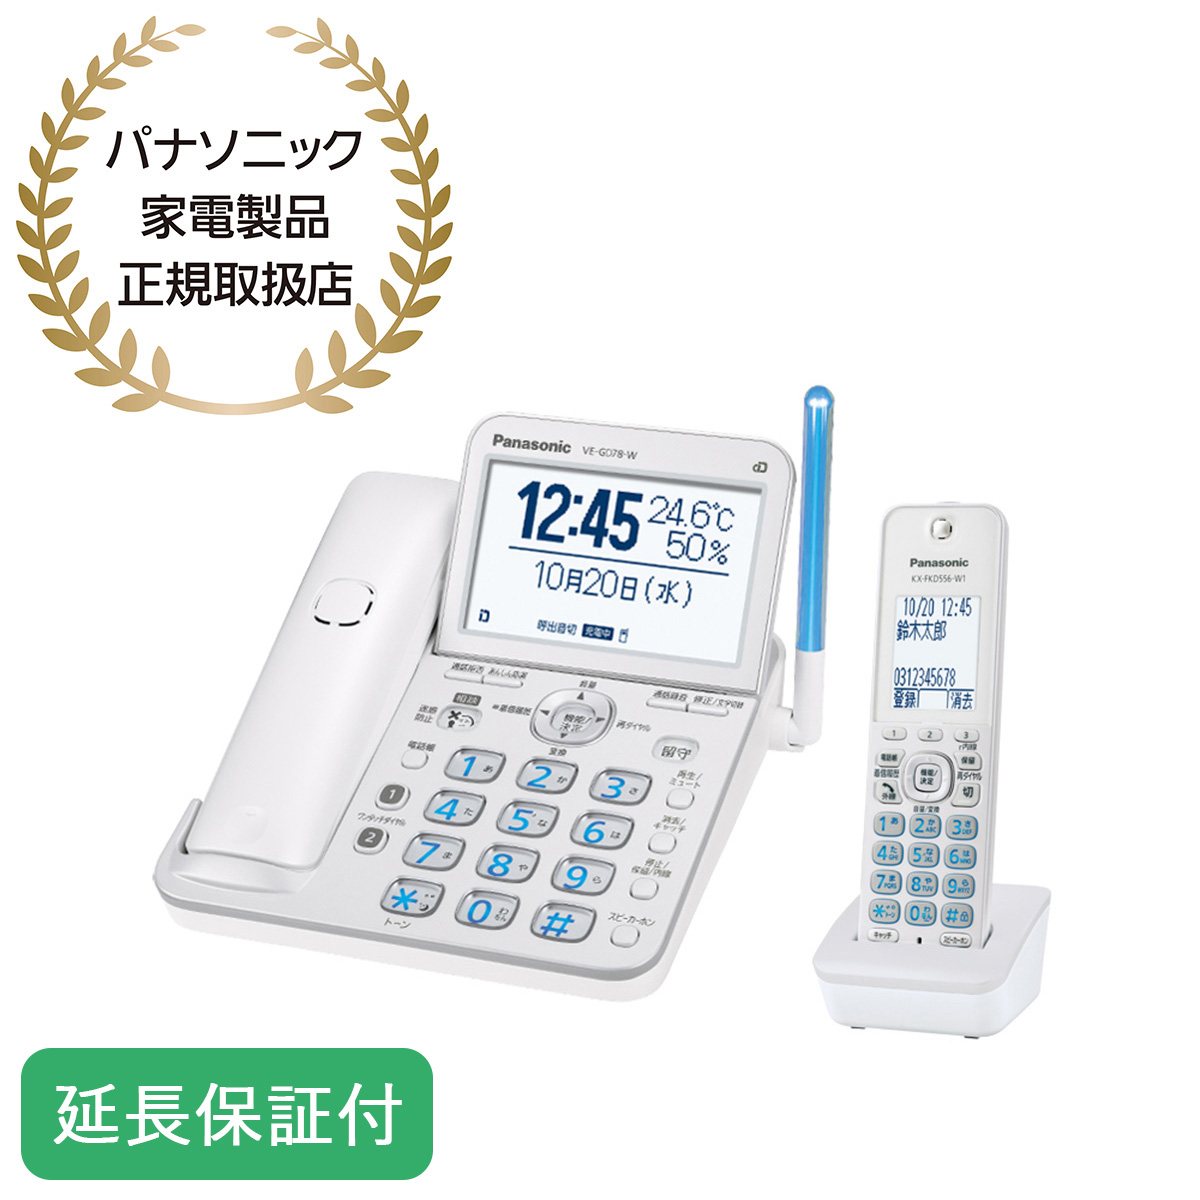 【安心の5年延長保証付】コードレス電話機(子機1台付) パールホワイト